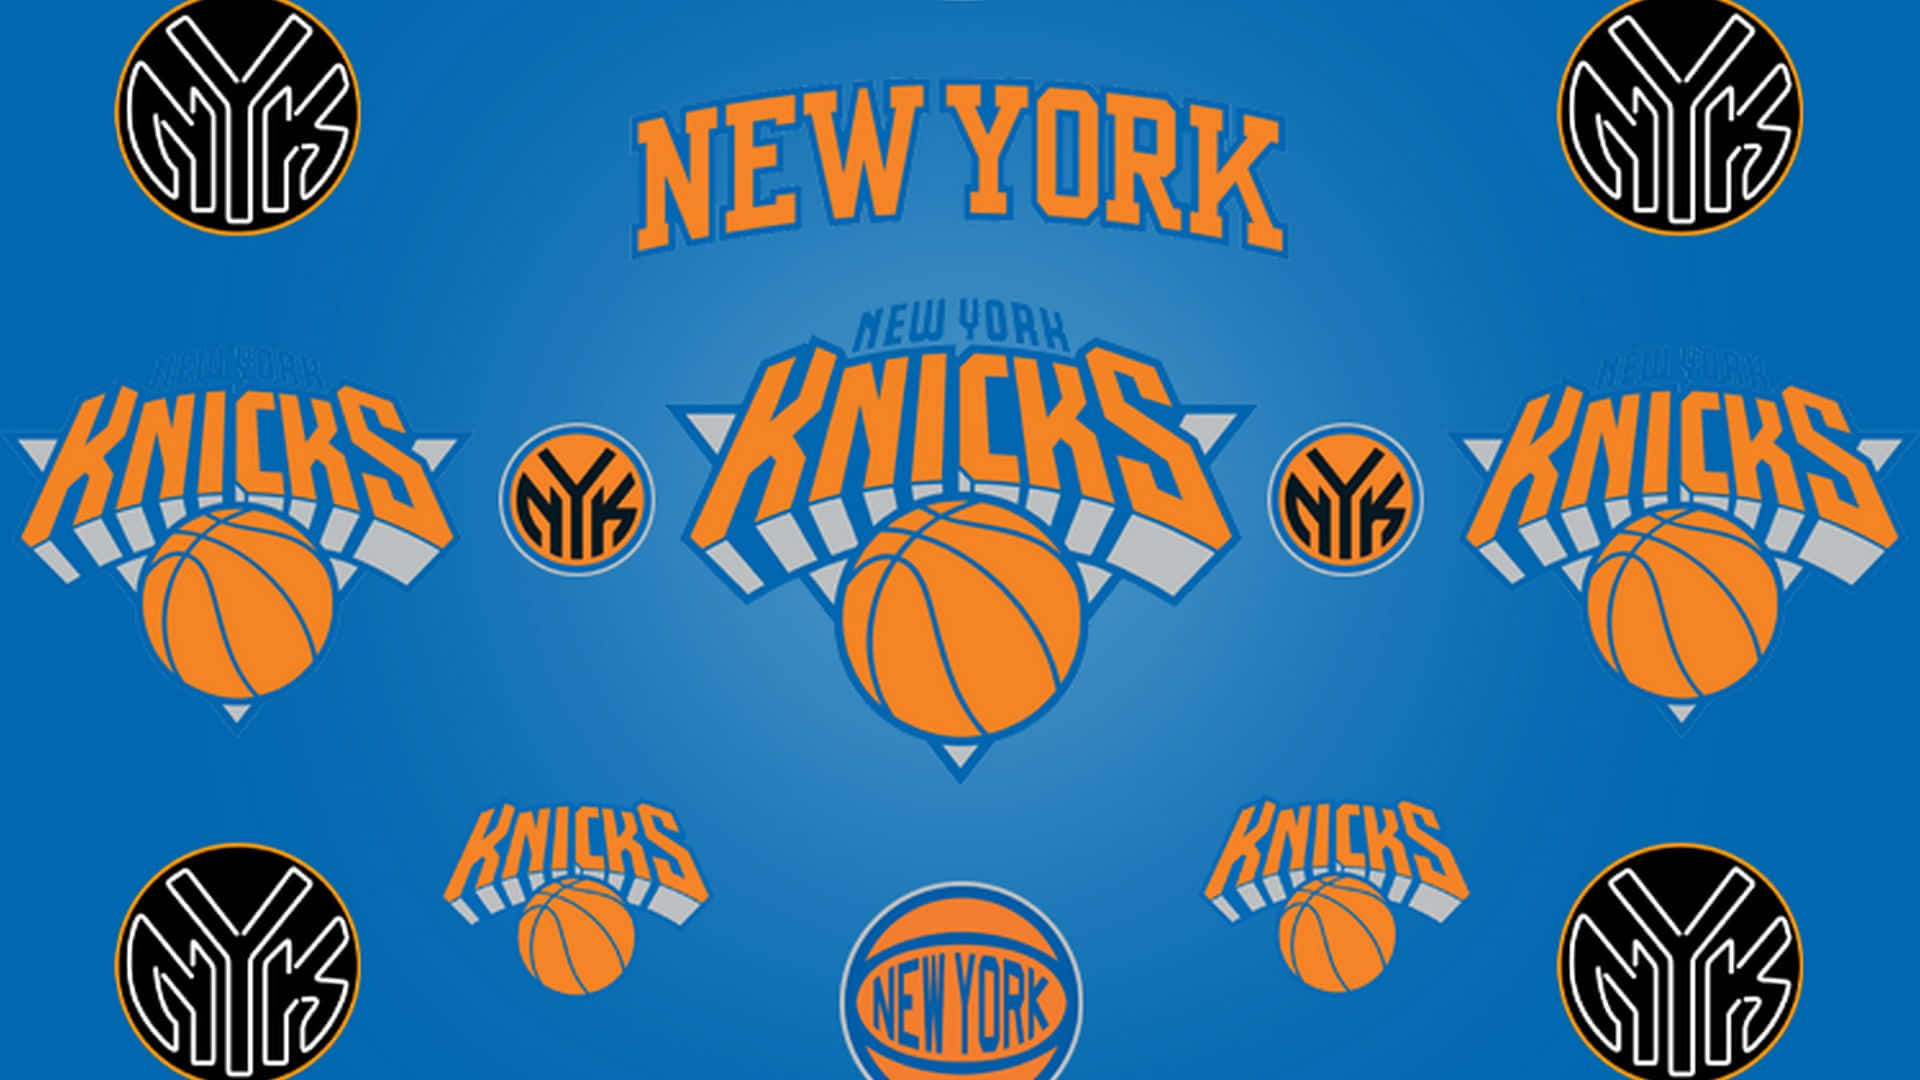 Verfolgedie New Yorker Knicks Auf Ihrem Weg An Die Spitze! Wallpaper